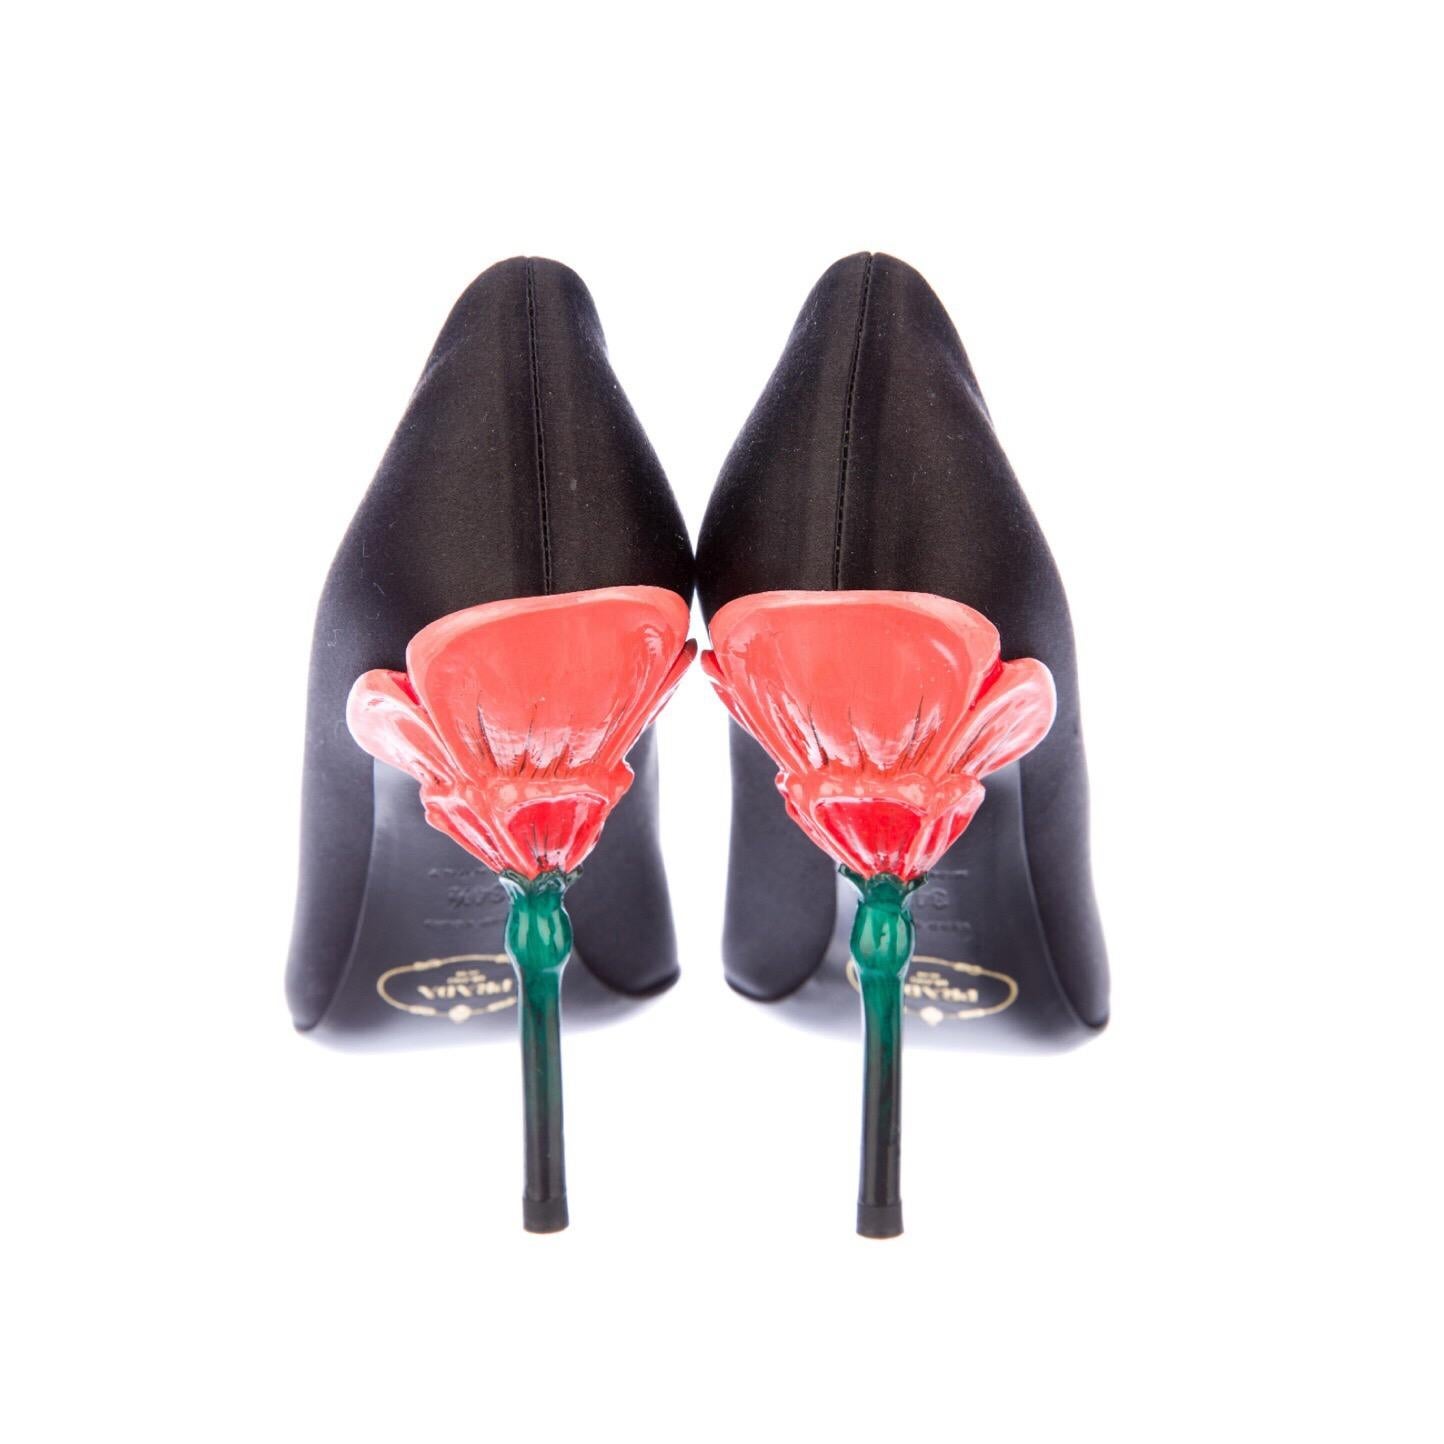 Escarpins noirs Raso Chic de la Collection S de Prada.
Réalisé en satin de soie, il est doté d'un bout ouvert et d'un talon sculpté en forme de fleur laquée.
Taille 4.5 U.S, 34.5 IT
- Suivez-nous sur Instagram @BASHAGOLD
